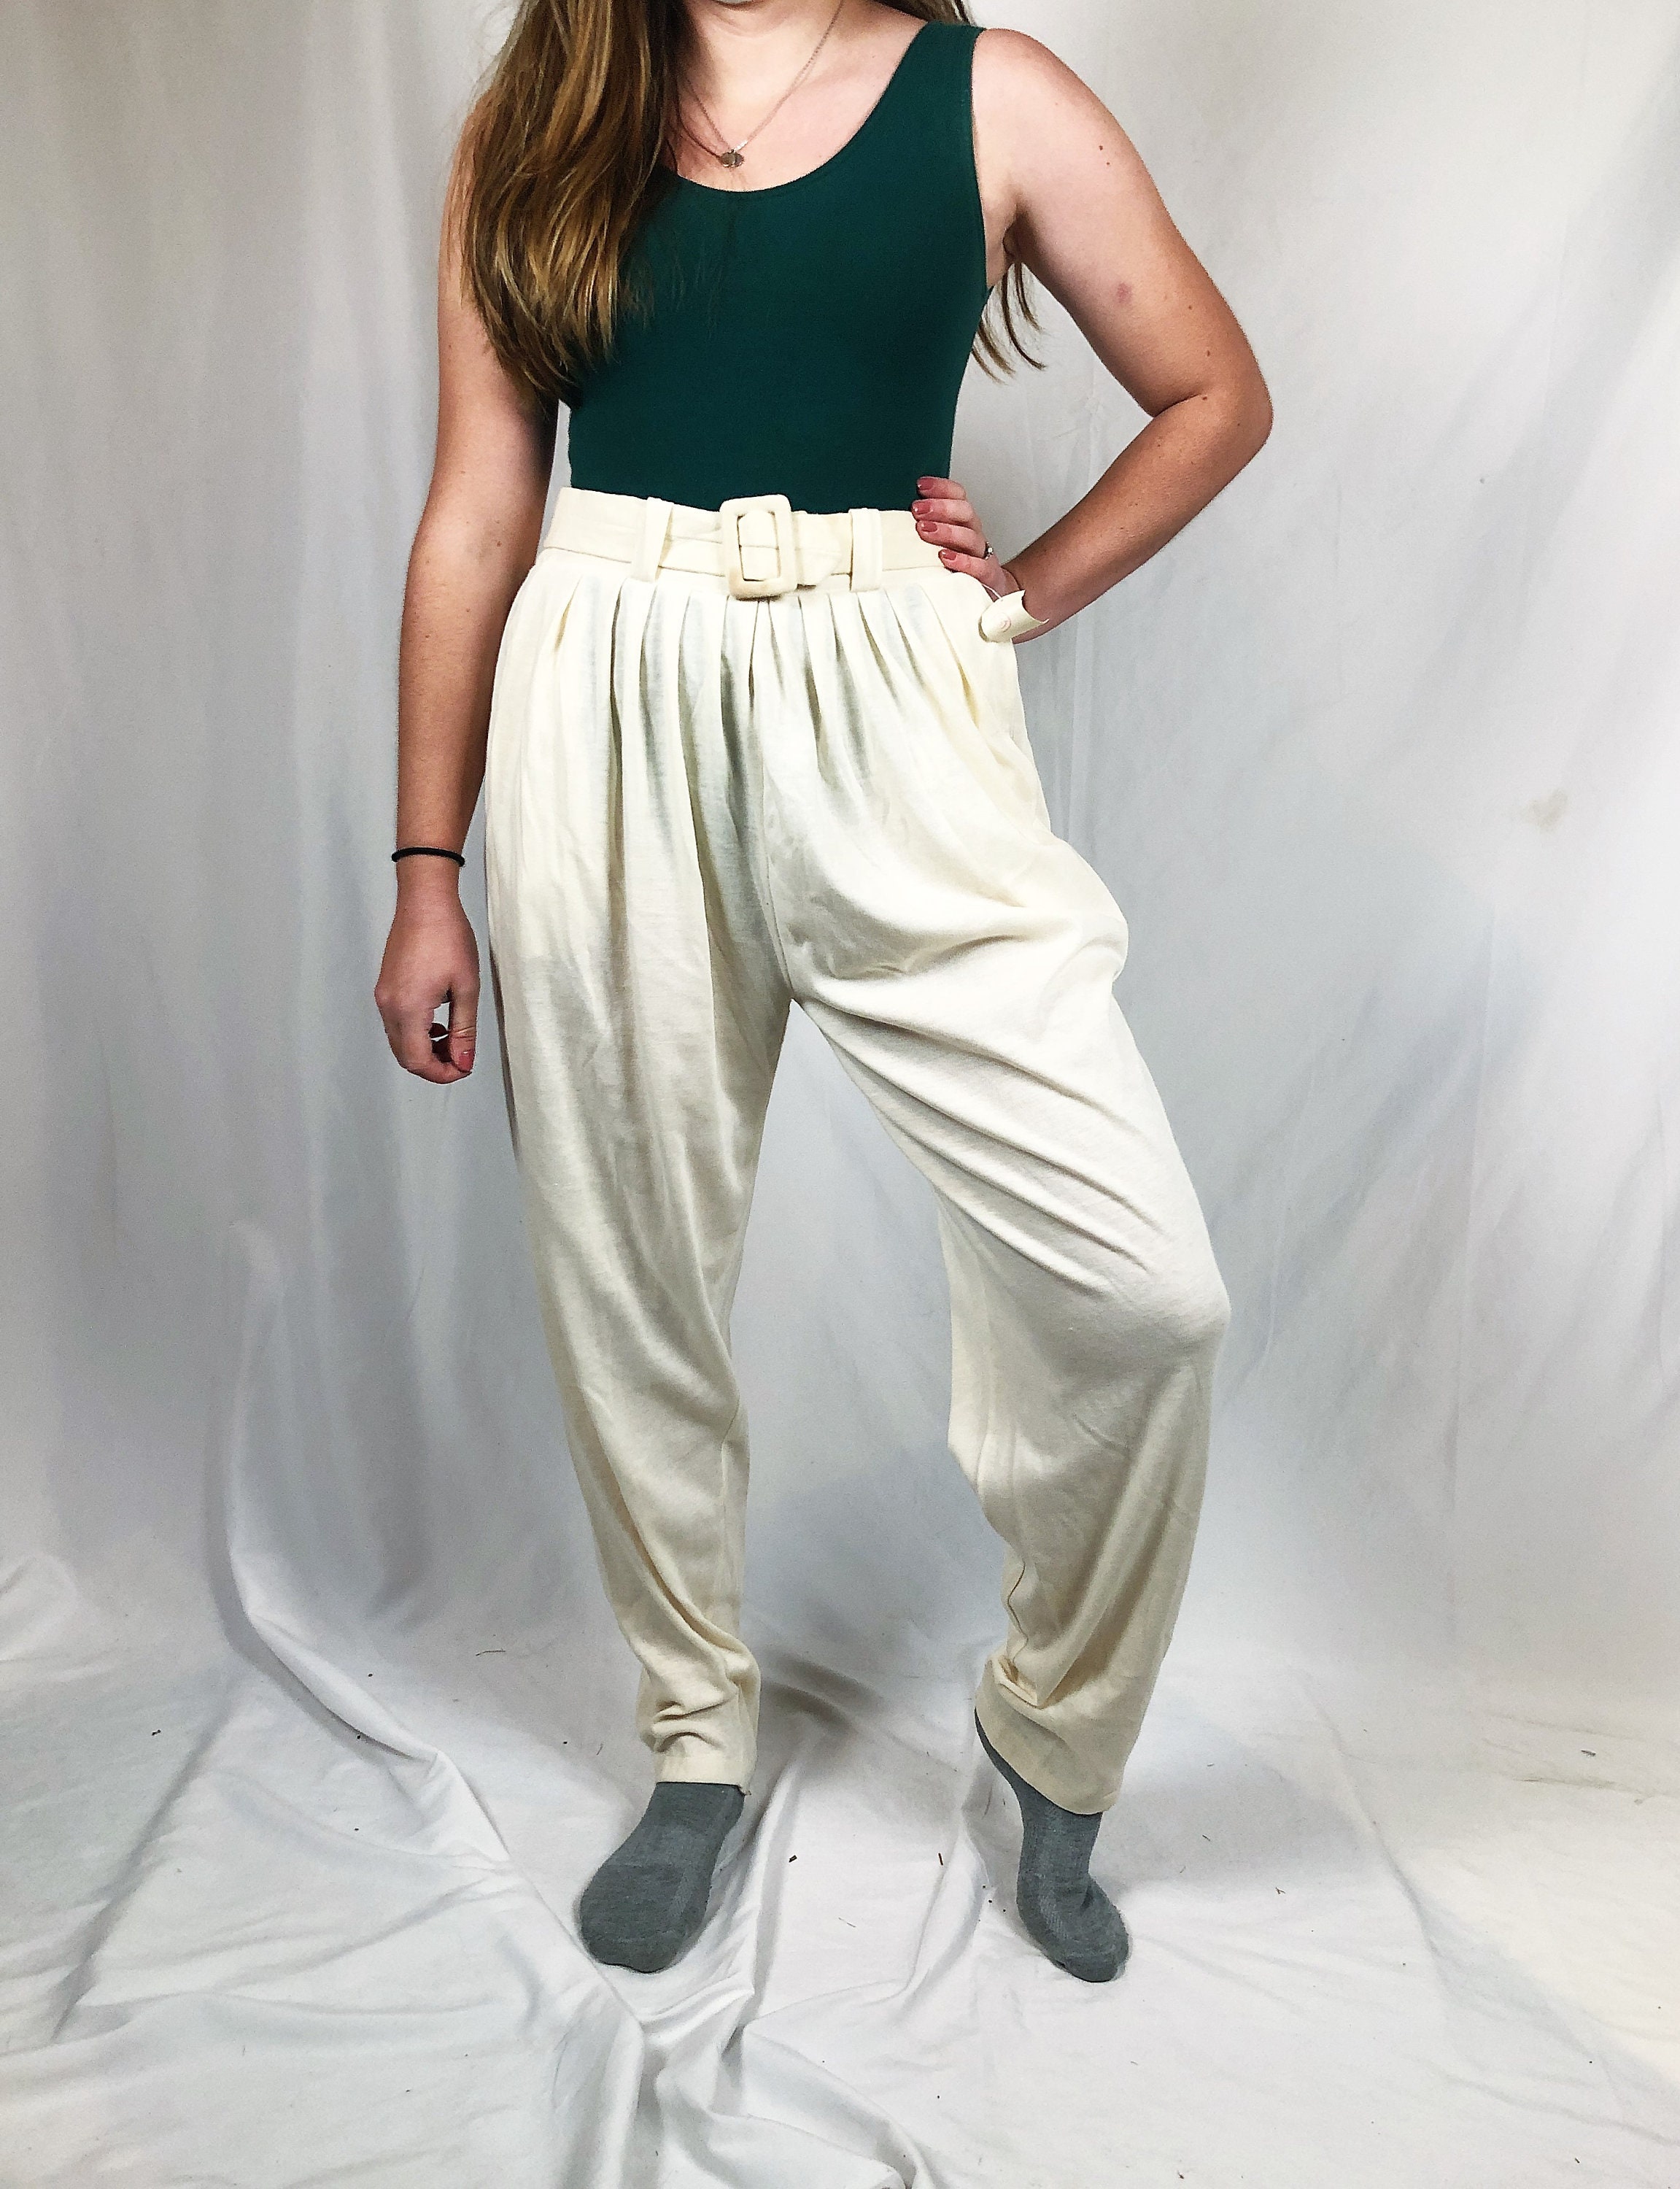 Yoga Cargo Pants-women's Pants-cargo Pants-full Length Pants-wide Leg  Pants-high Waisted Pants-fold Over Yoga Pants-green Cotton Pants-pants 